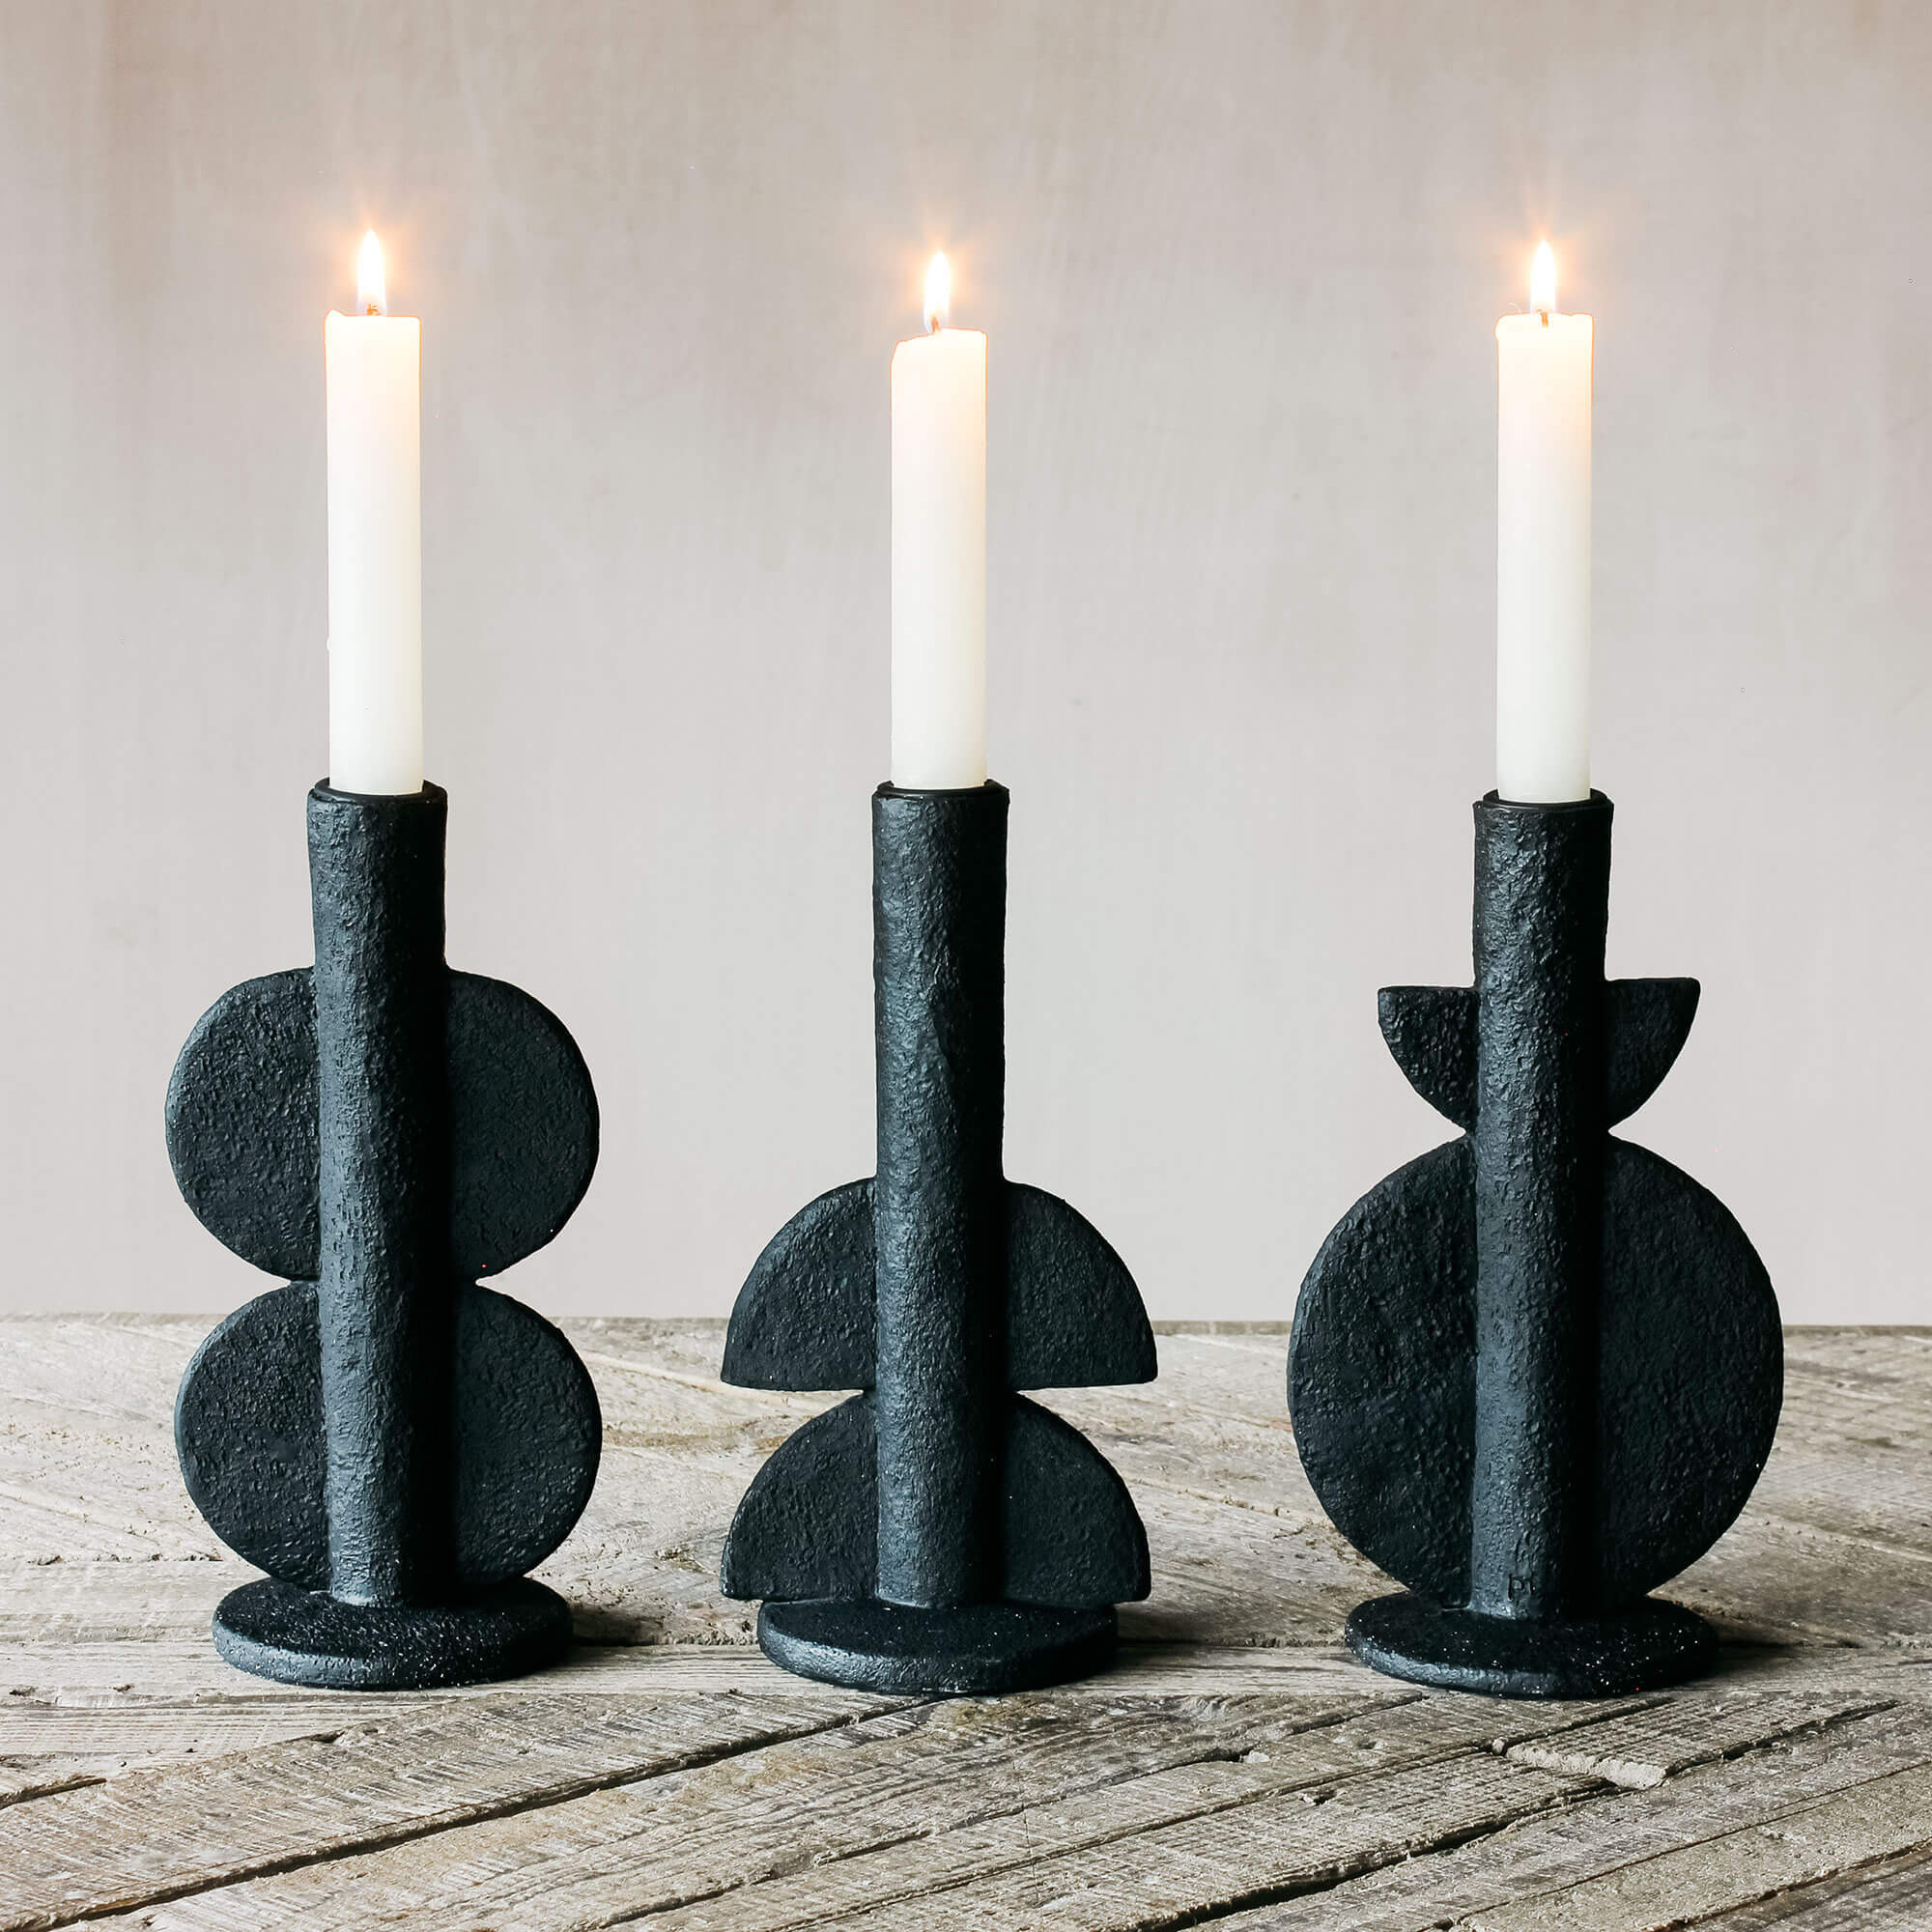 Ava Black Candle Holder - image 1